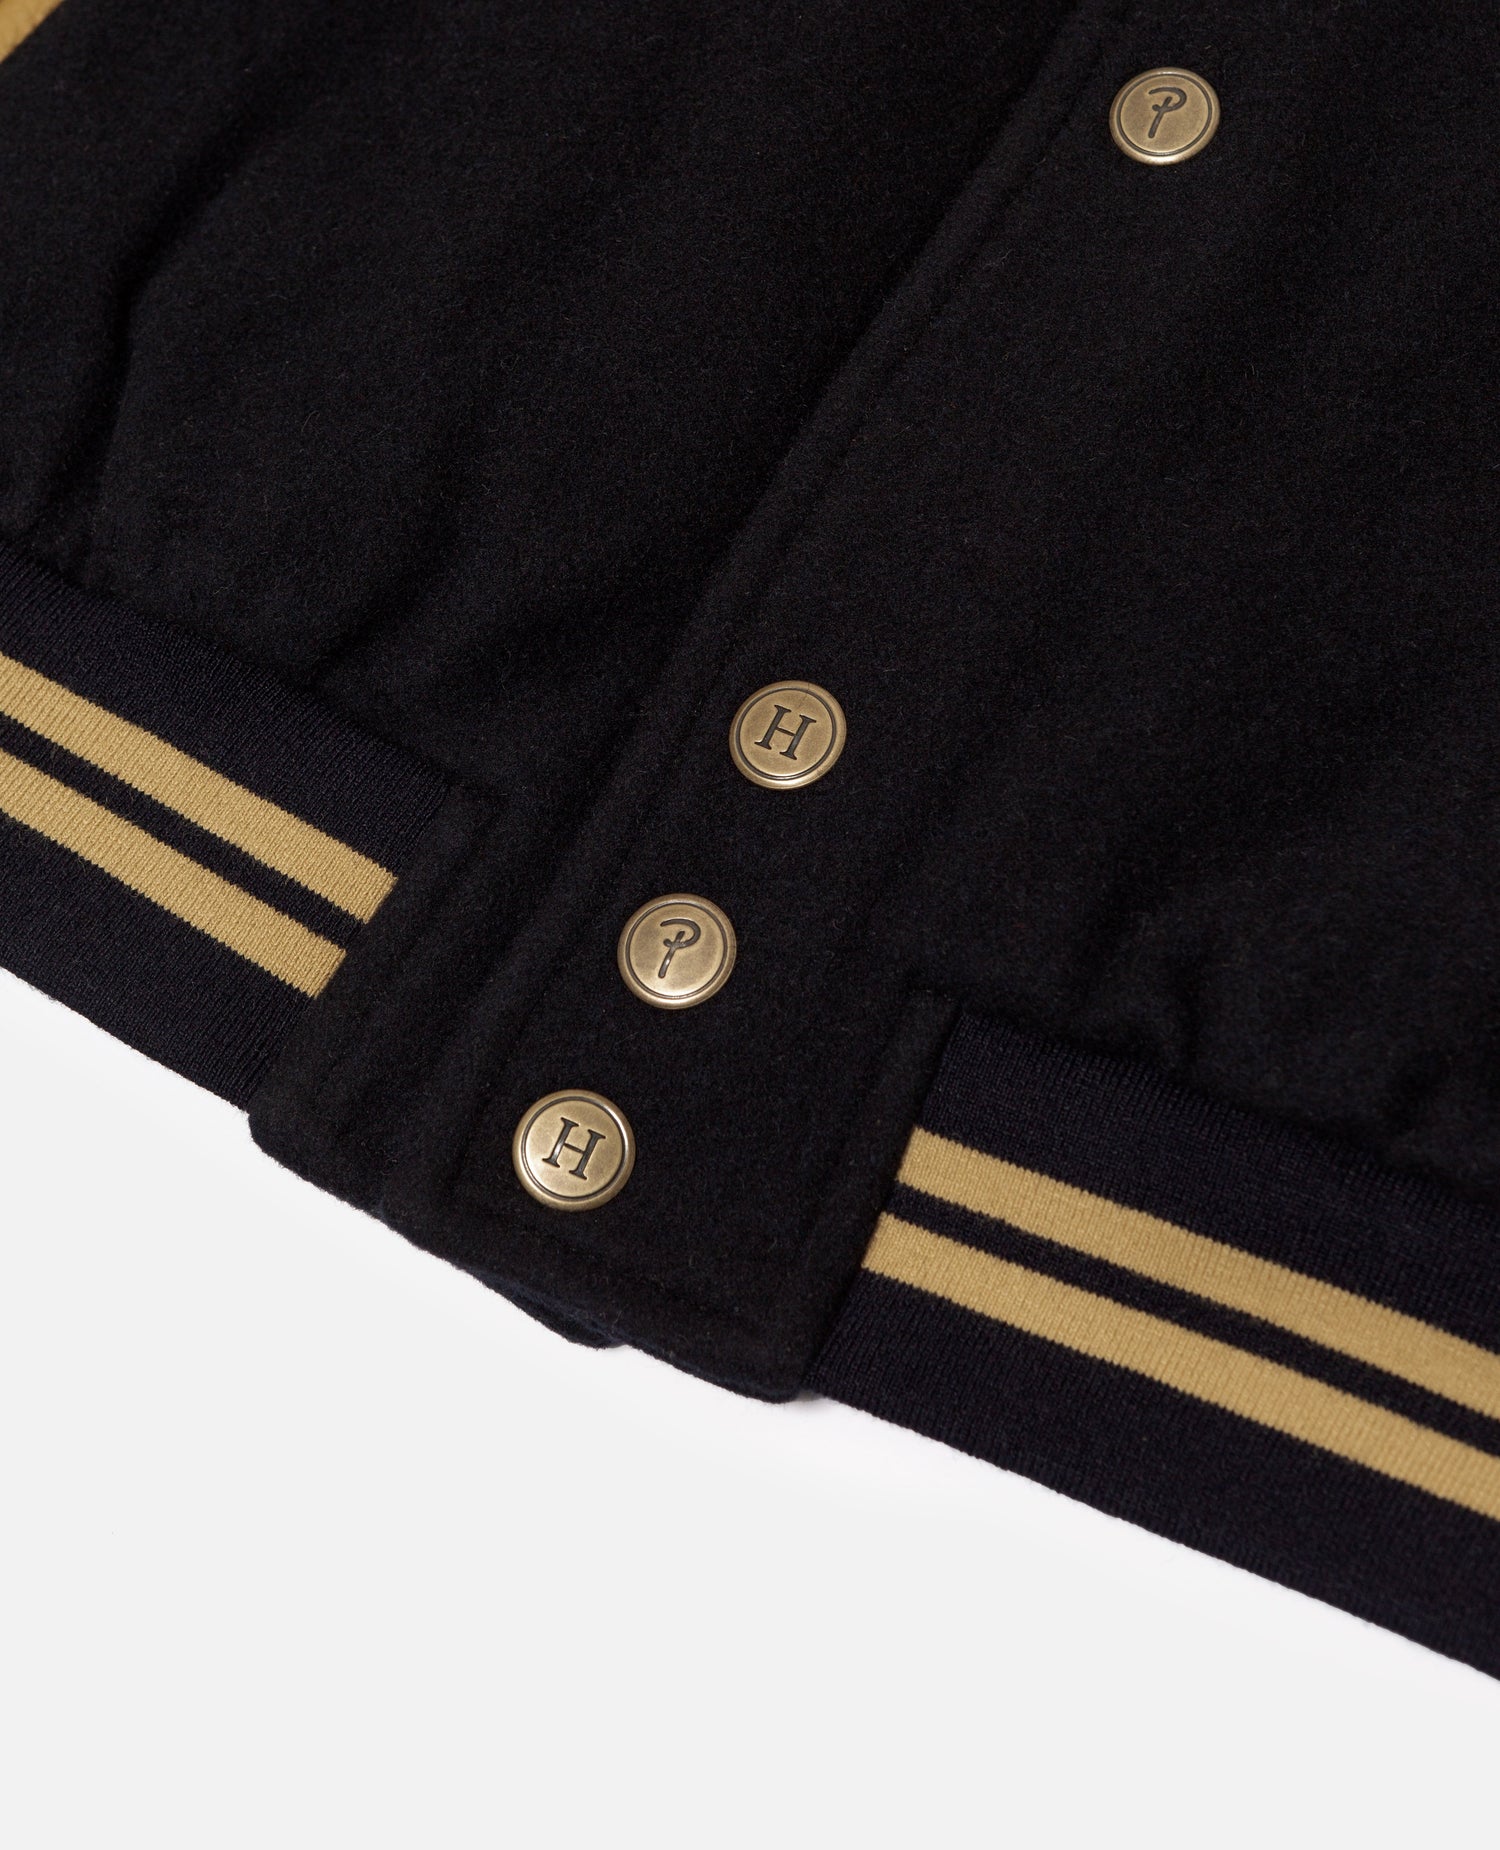 Patta x Tommy Varsity Jacket (Sport Navy)